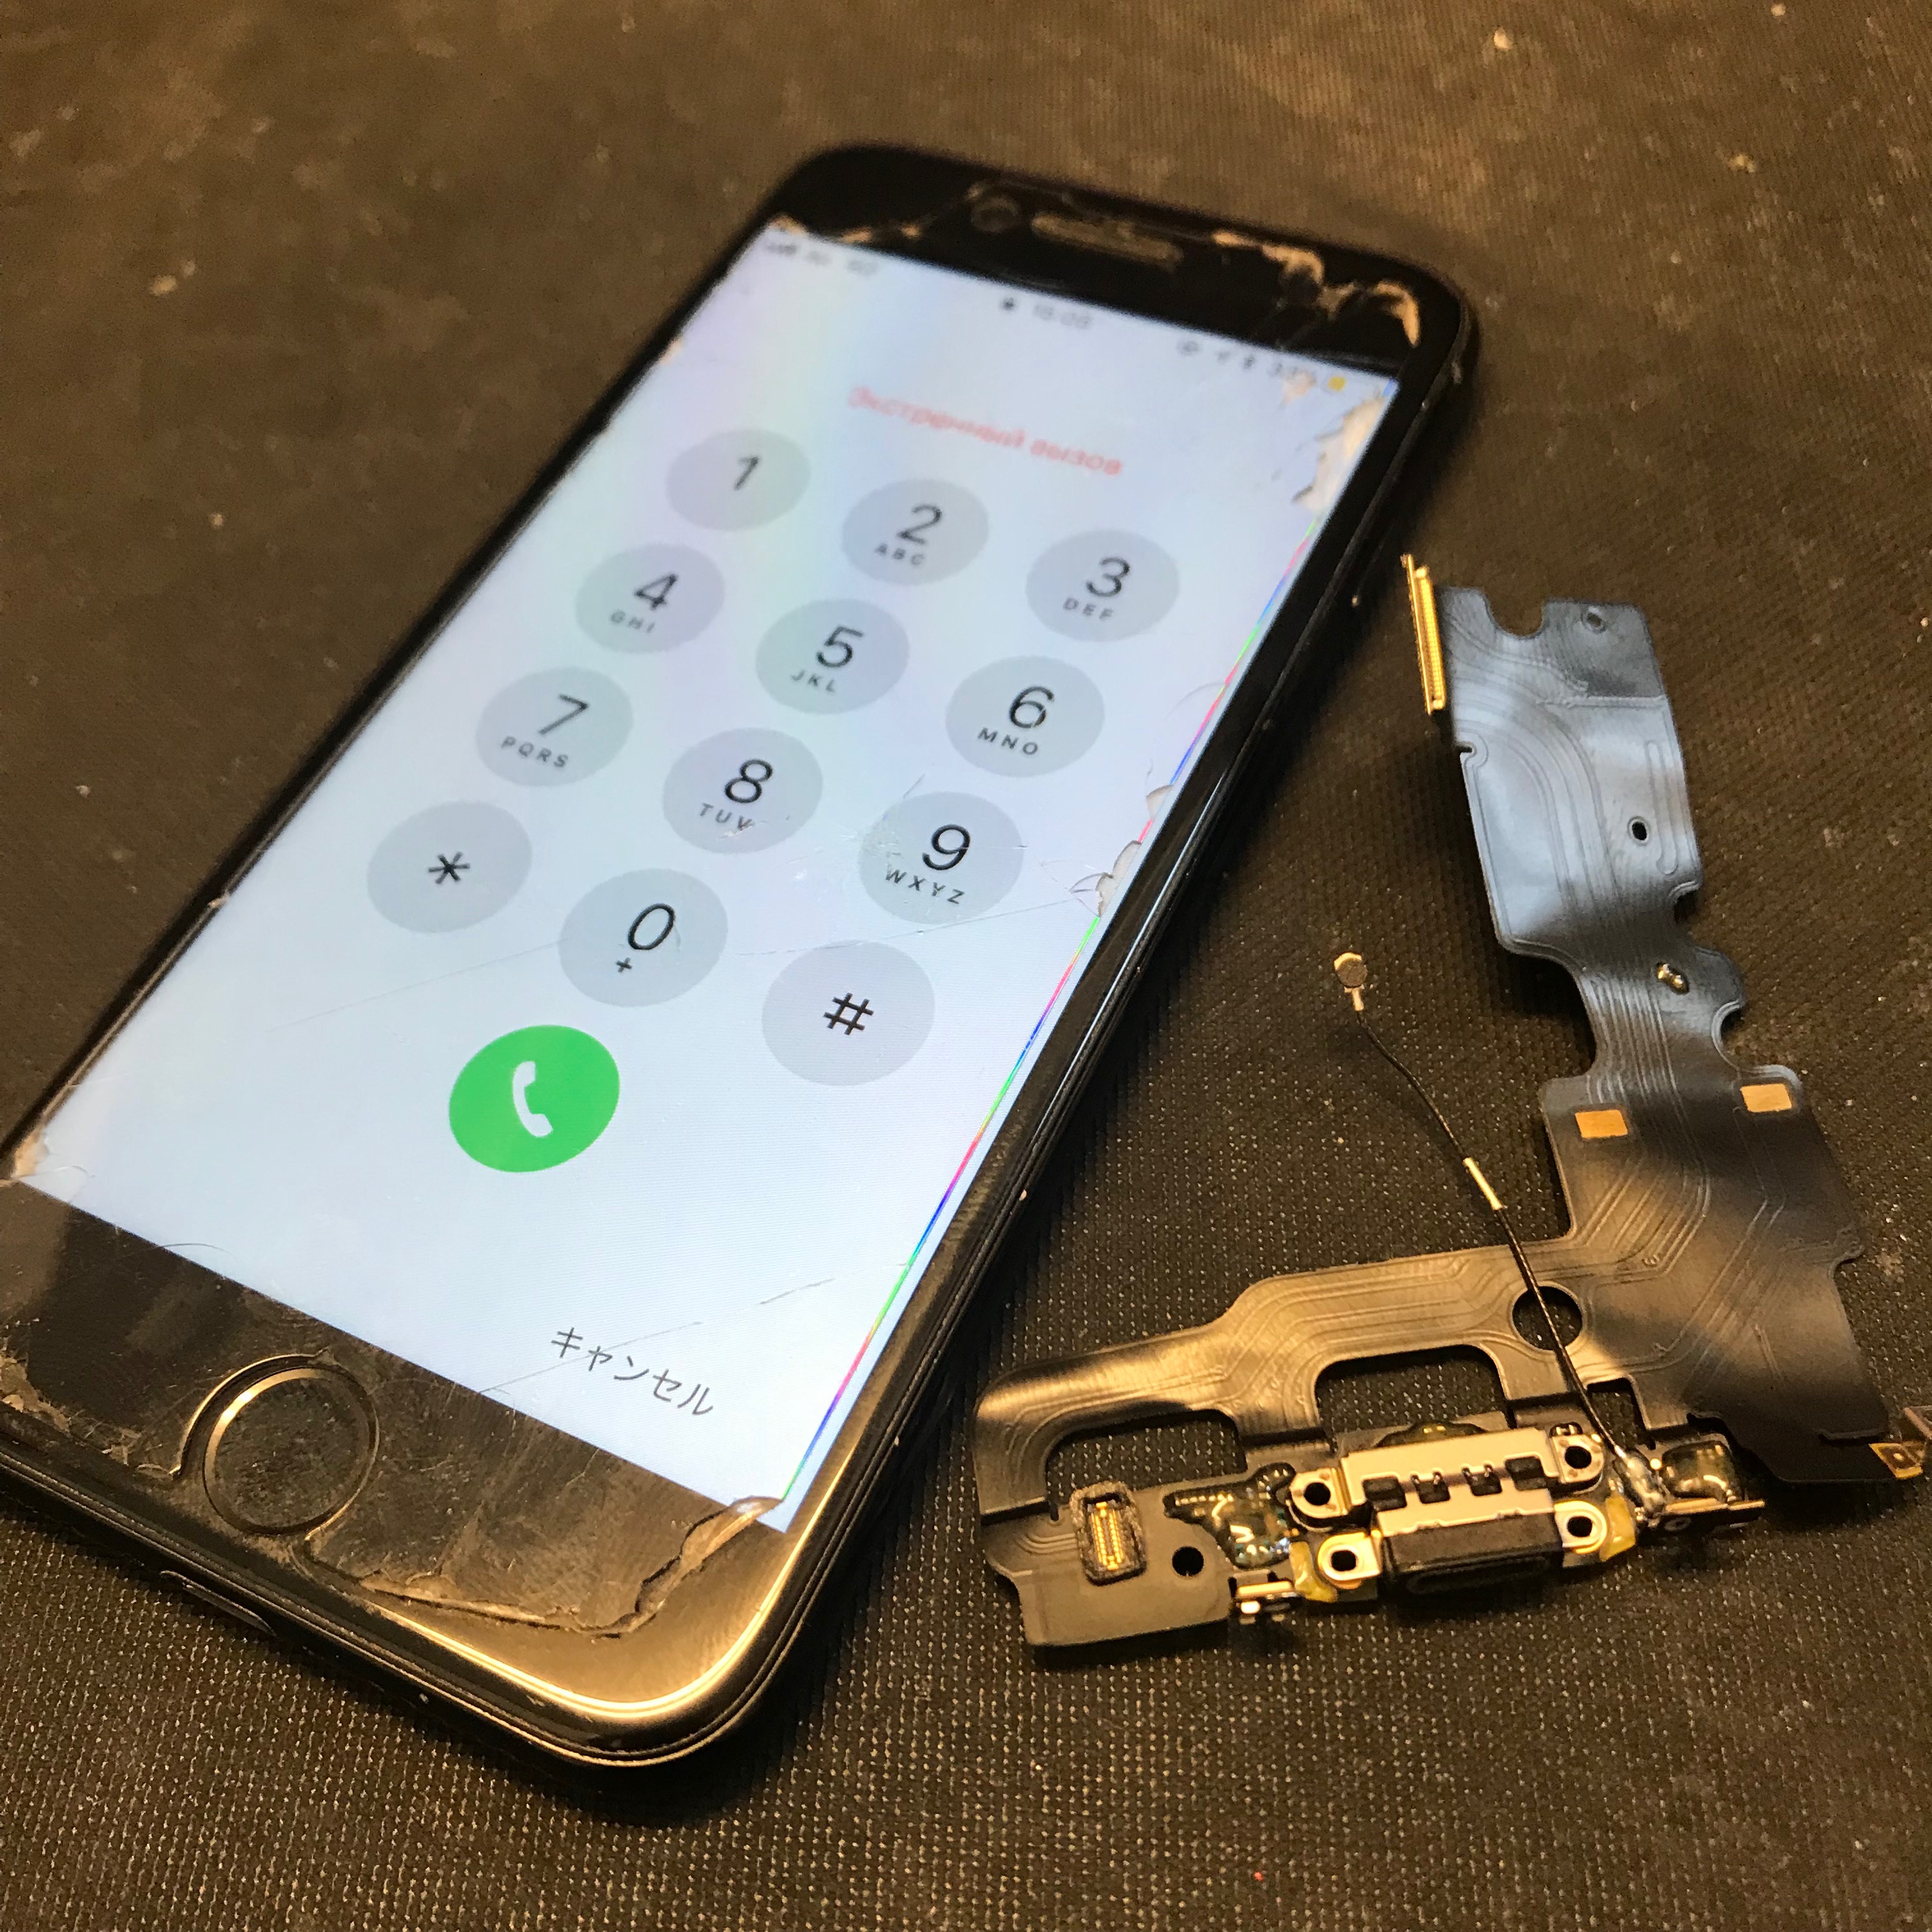 小平市からのお客様 Iphone7 アイフォン7 充電不良によるライトニングコネクタ交換修理 機種 Iphone 7 修理事例のご紹介